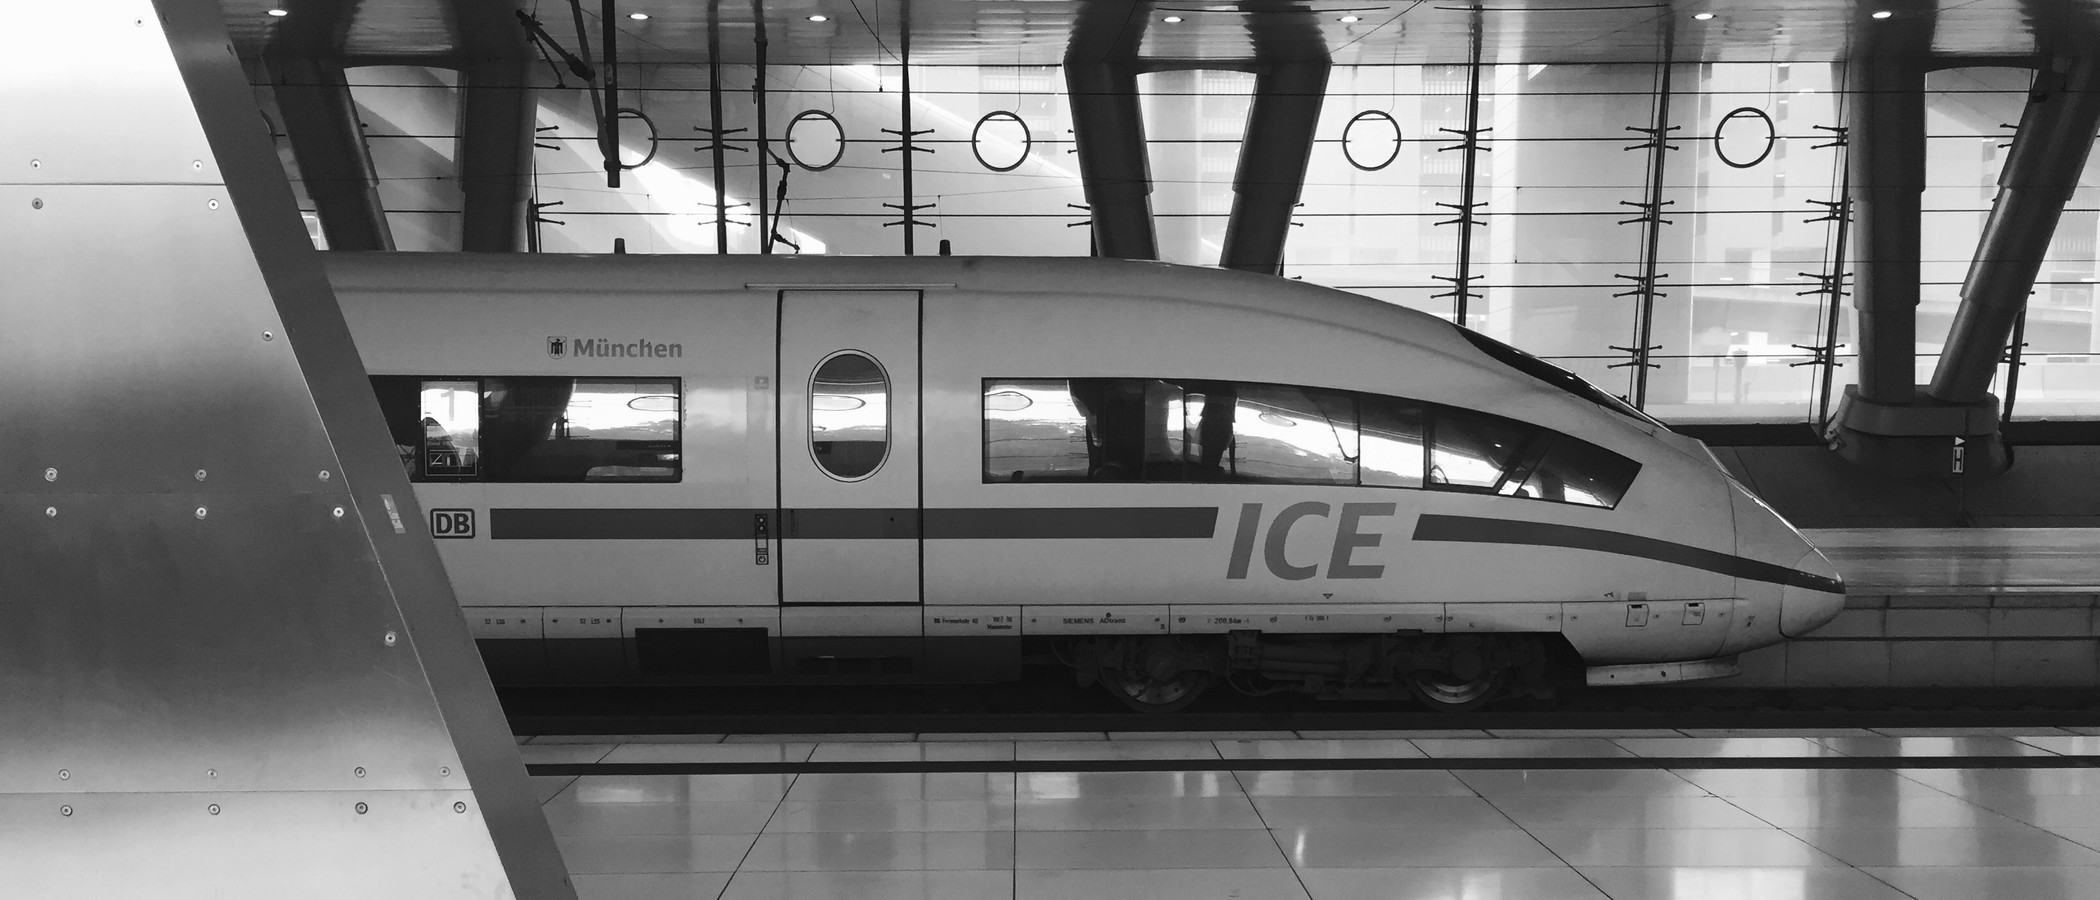 ICE am Bahnsteig